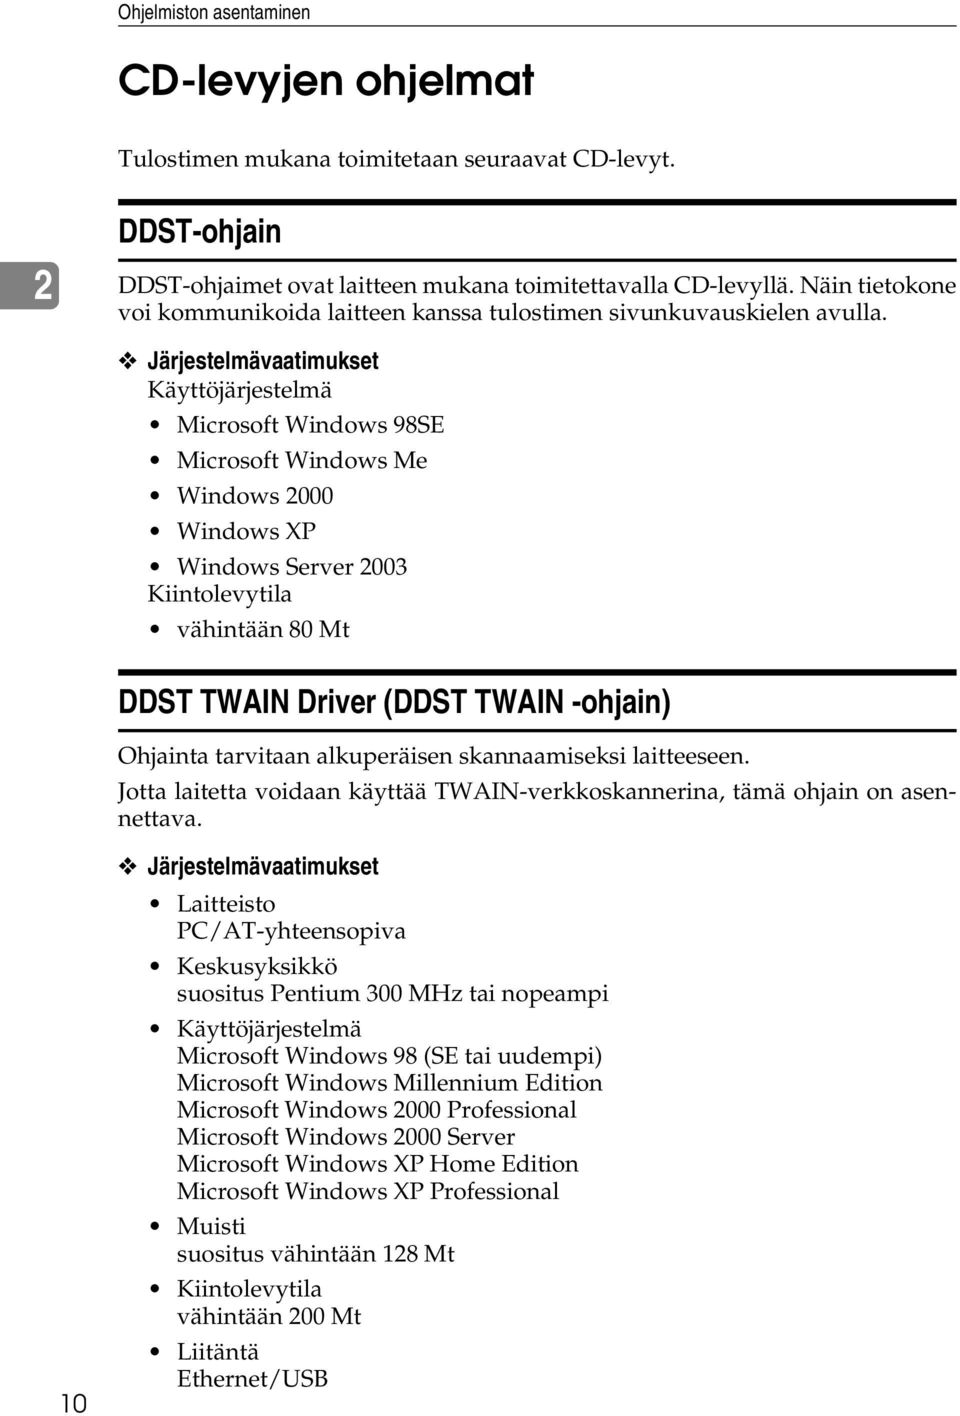 Järjestelmävaatimukset Käyttöjärjestelmä Microsoft Windows 98SE Microsoft Windows Me Windows 2000 Windows XP Windows Server 2003 Kiintolevytila vähintään 80 Mt DDST TWAIN Driver (DDST TWAIN -ohjain)